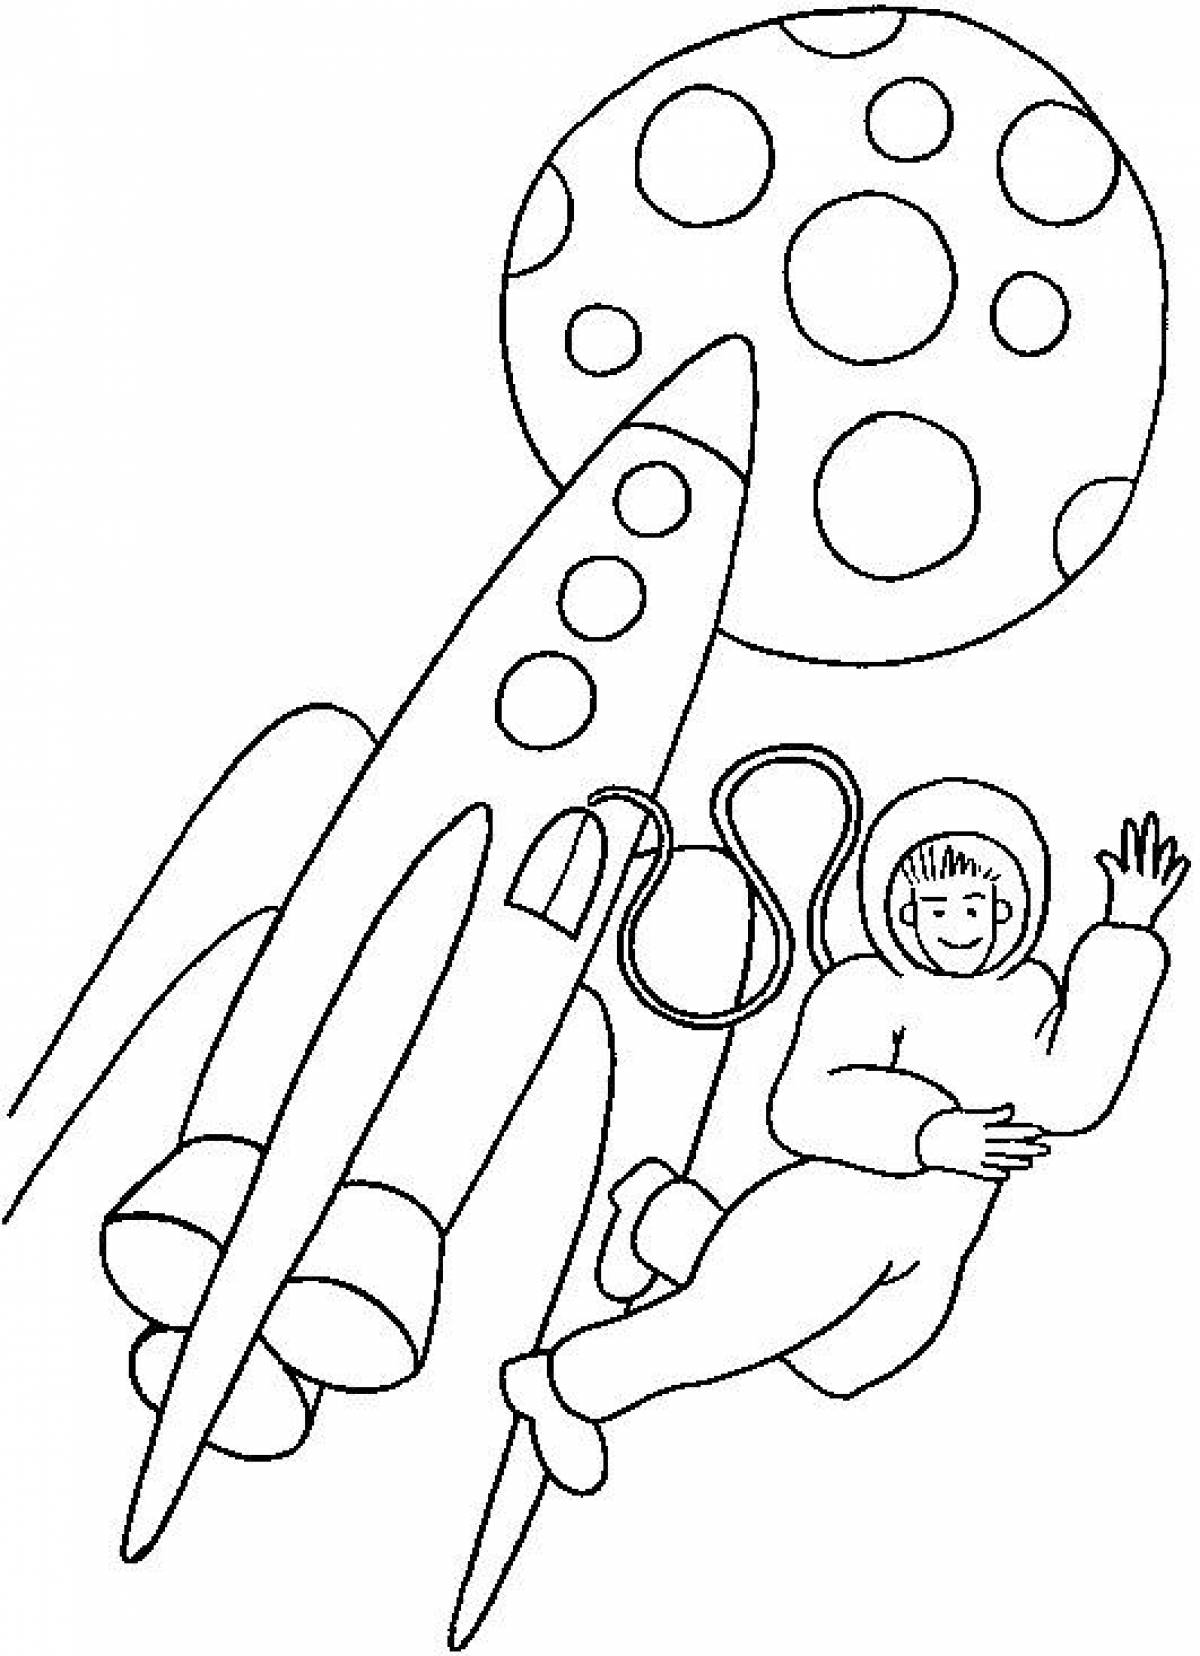 Раскраски к дню космонавтики для детей распечатать. Ракета раскраска. Раскраски ко Дню космонавтики. Раскраска для малышей. Космос. Раскраска день космонавтики для детей.